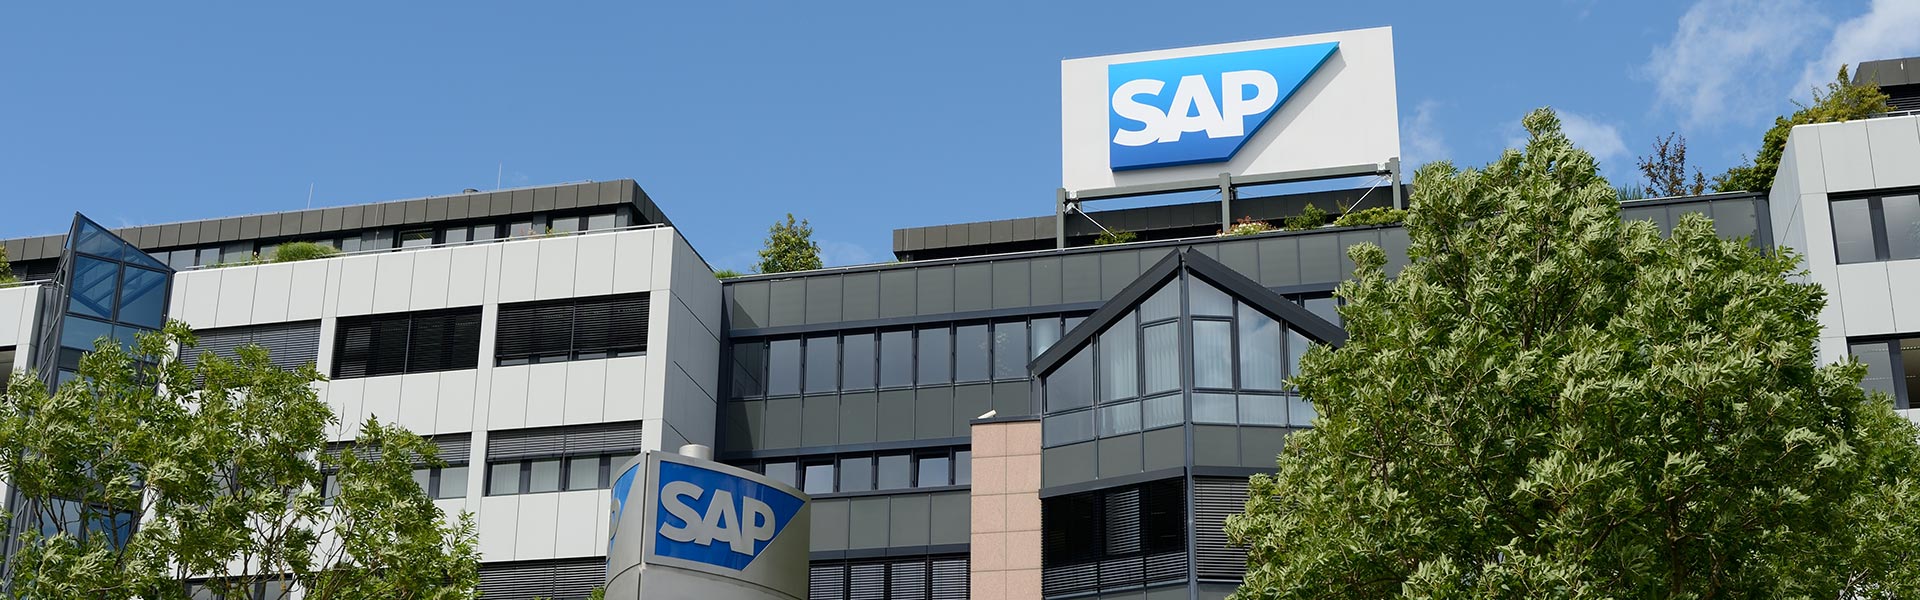 SAP présente une série de partenariats mondiaux avec des clients qui accélèrent la transformation